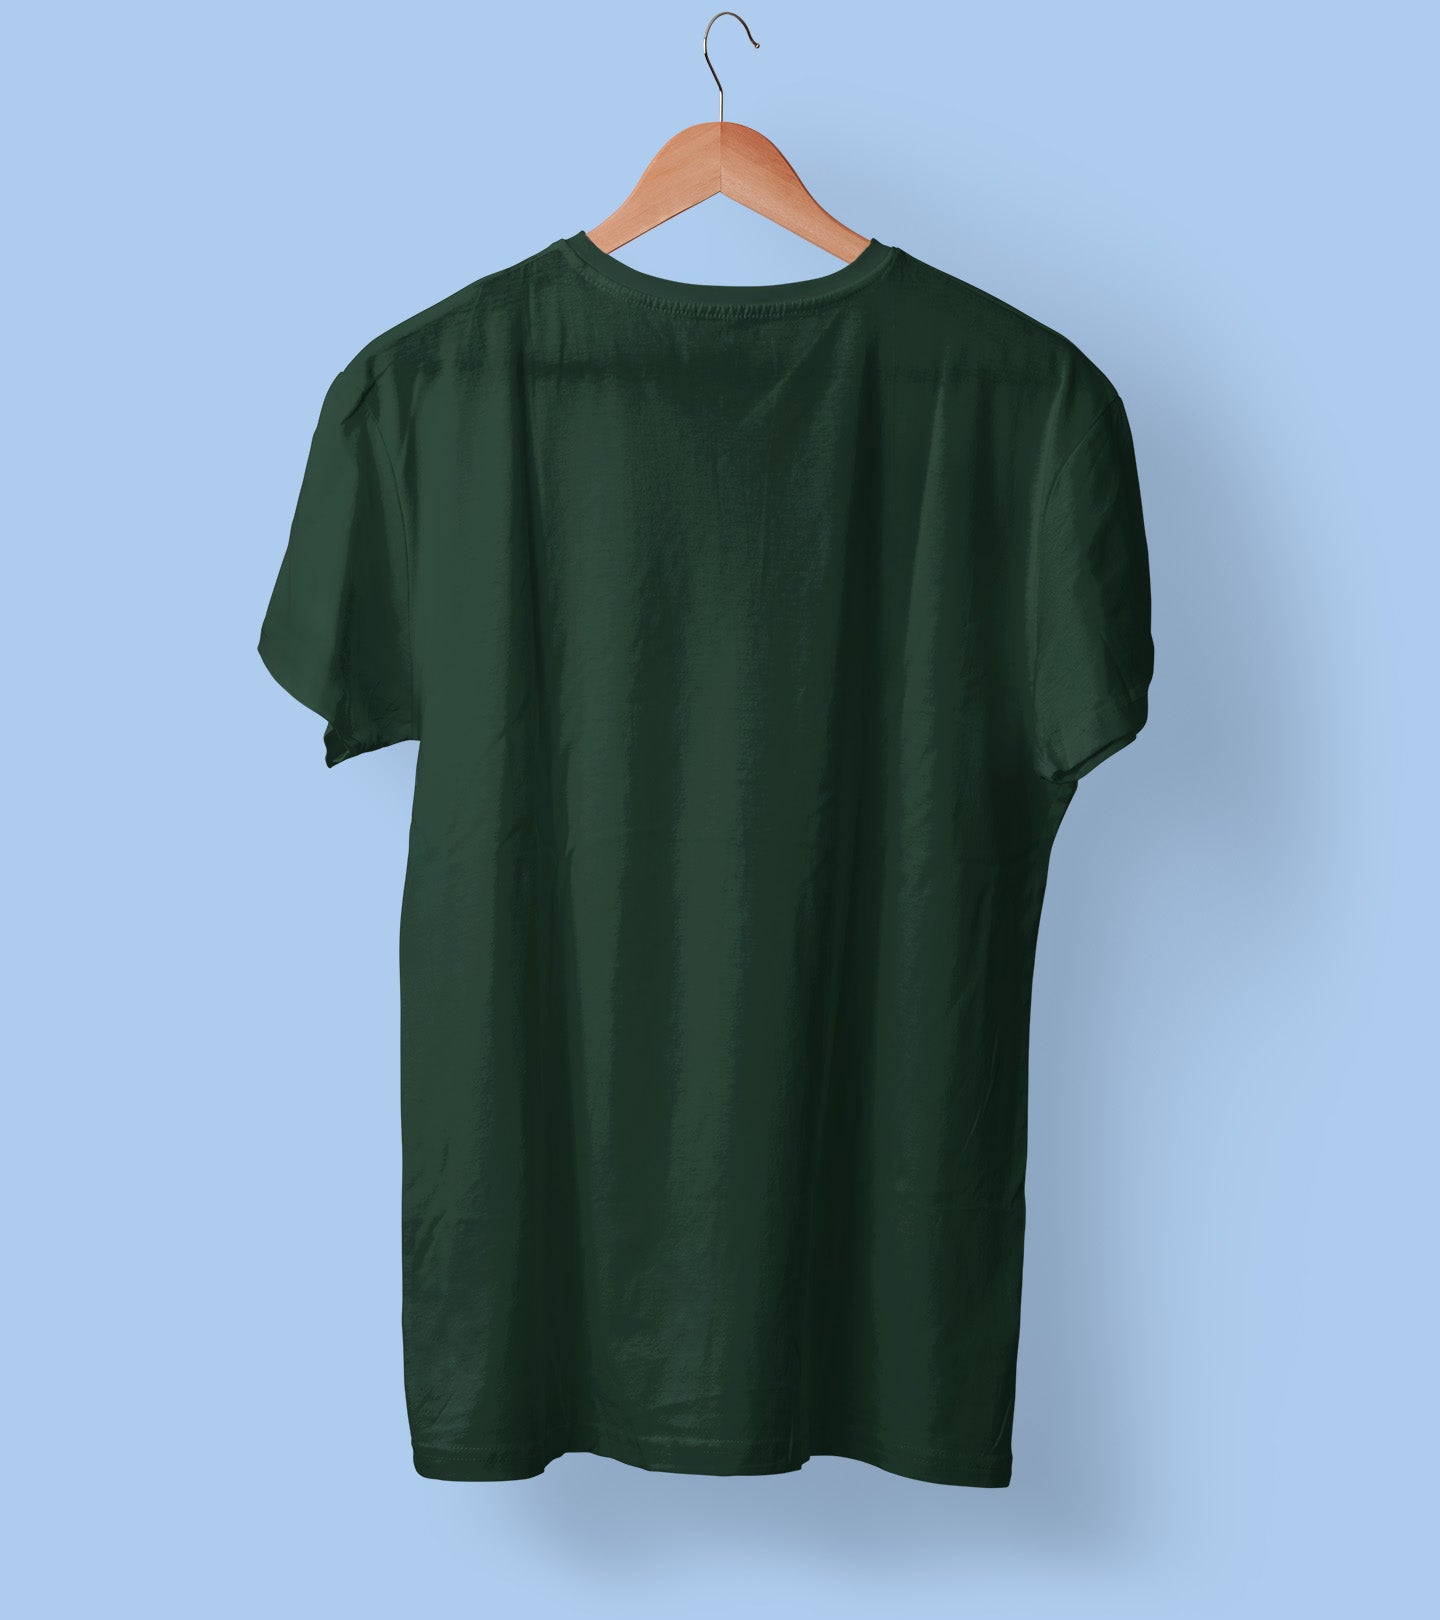 Bottle green plain t shirt for men